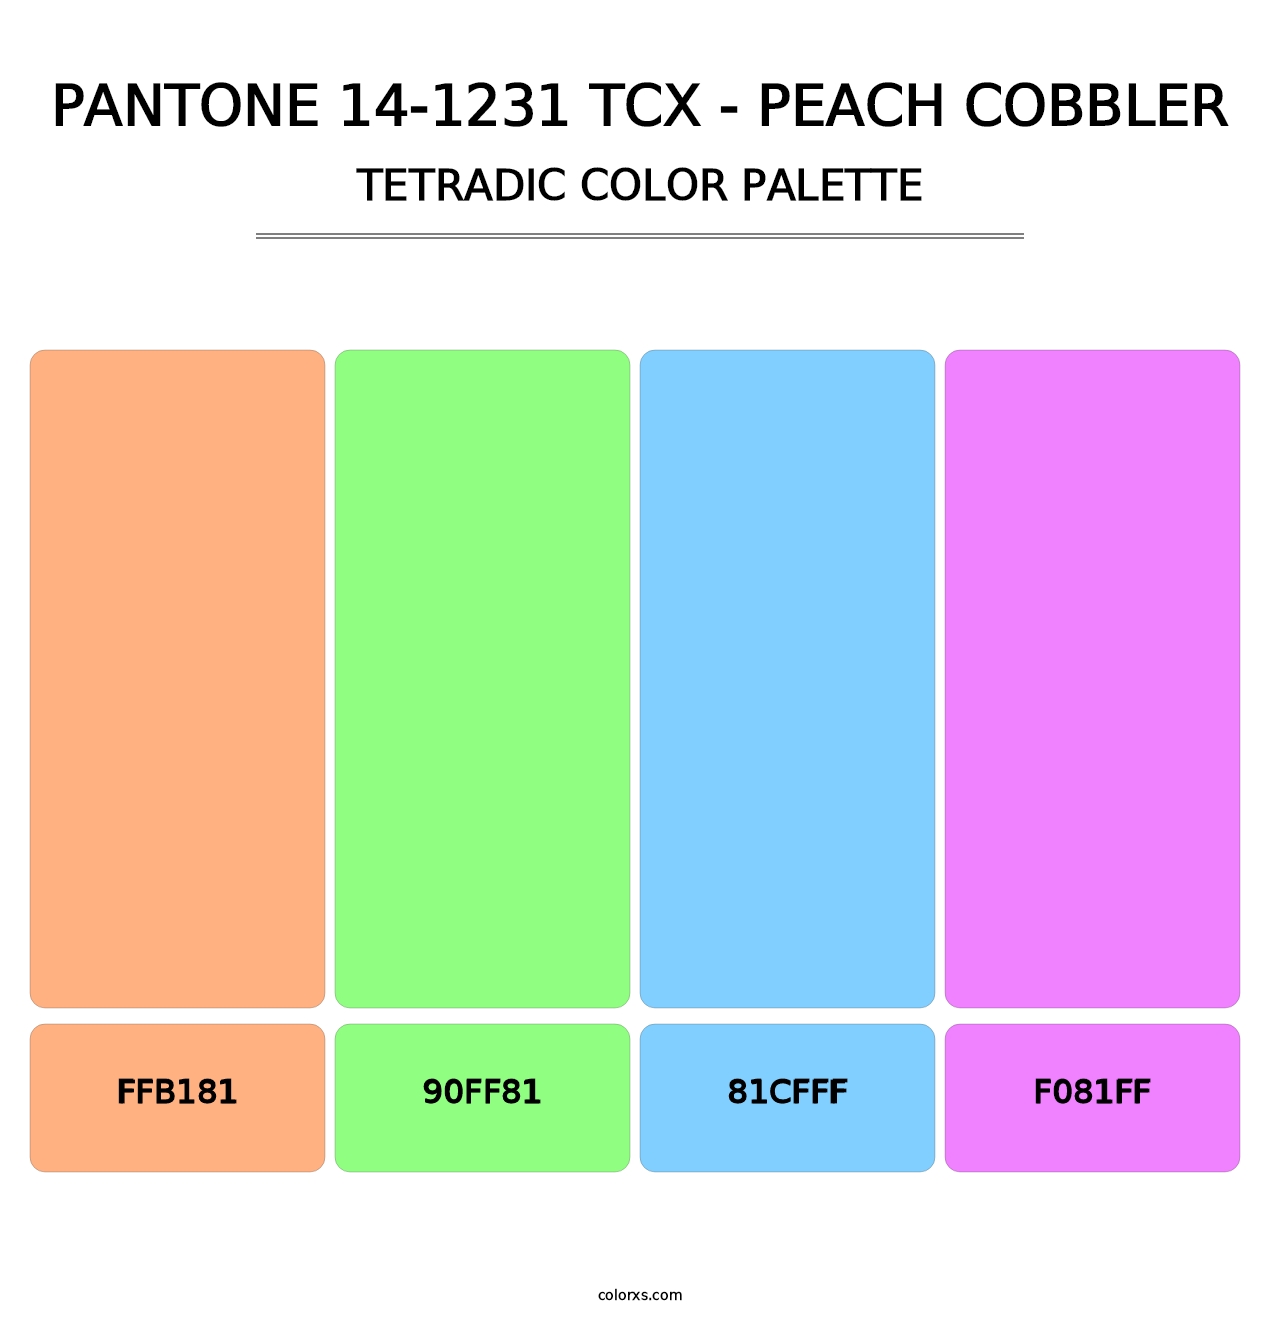 PANTONE 14-1231 TCX - Peach Cobbler - Tetradic Color Palette